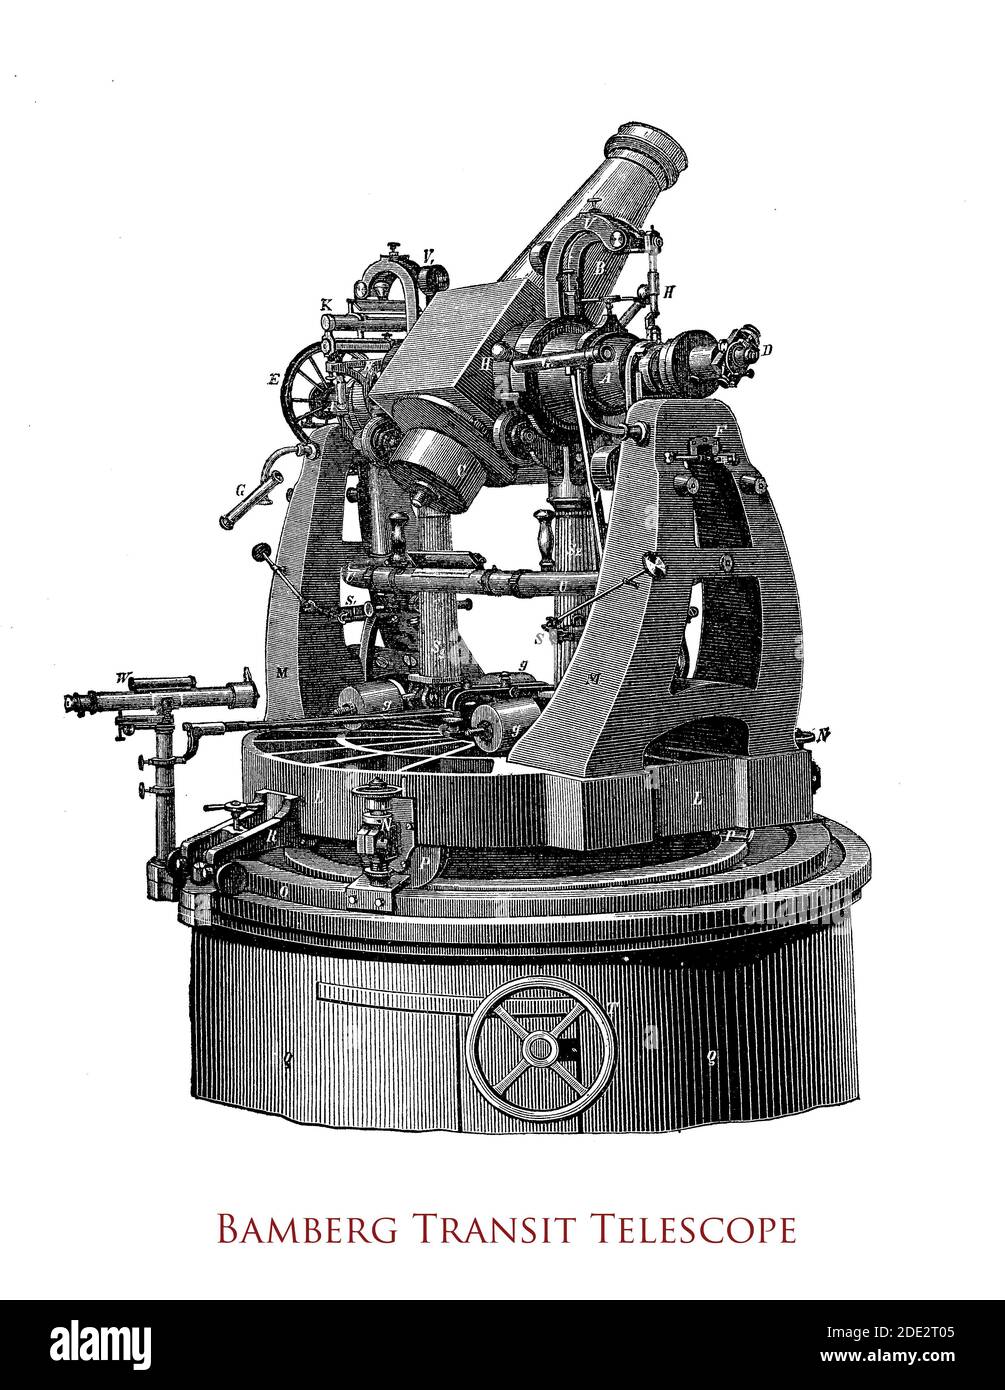 Télescope de transit géodésique construit par Carl Bamberg (1847-1892) apprenti de Carl Zeiss utilisé pour la détermination de la longitude, mesurant les angles horizontaux et verticaux Banque D'Images